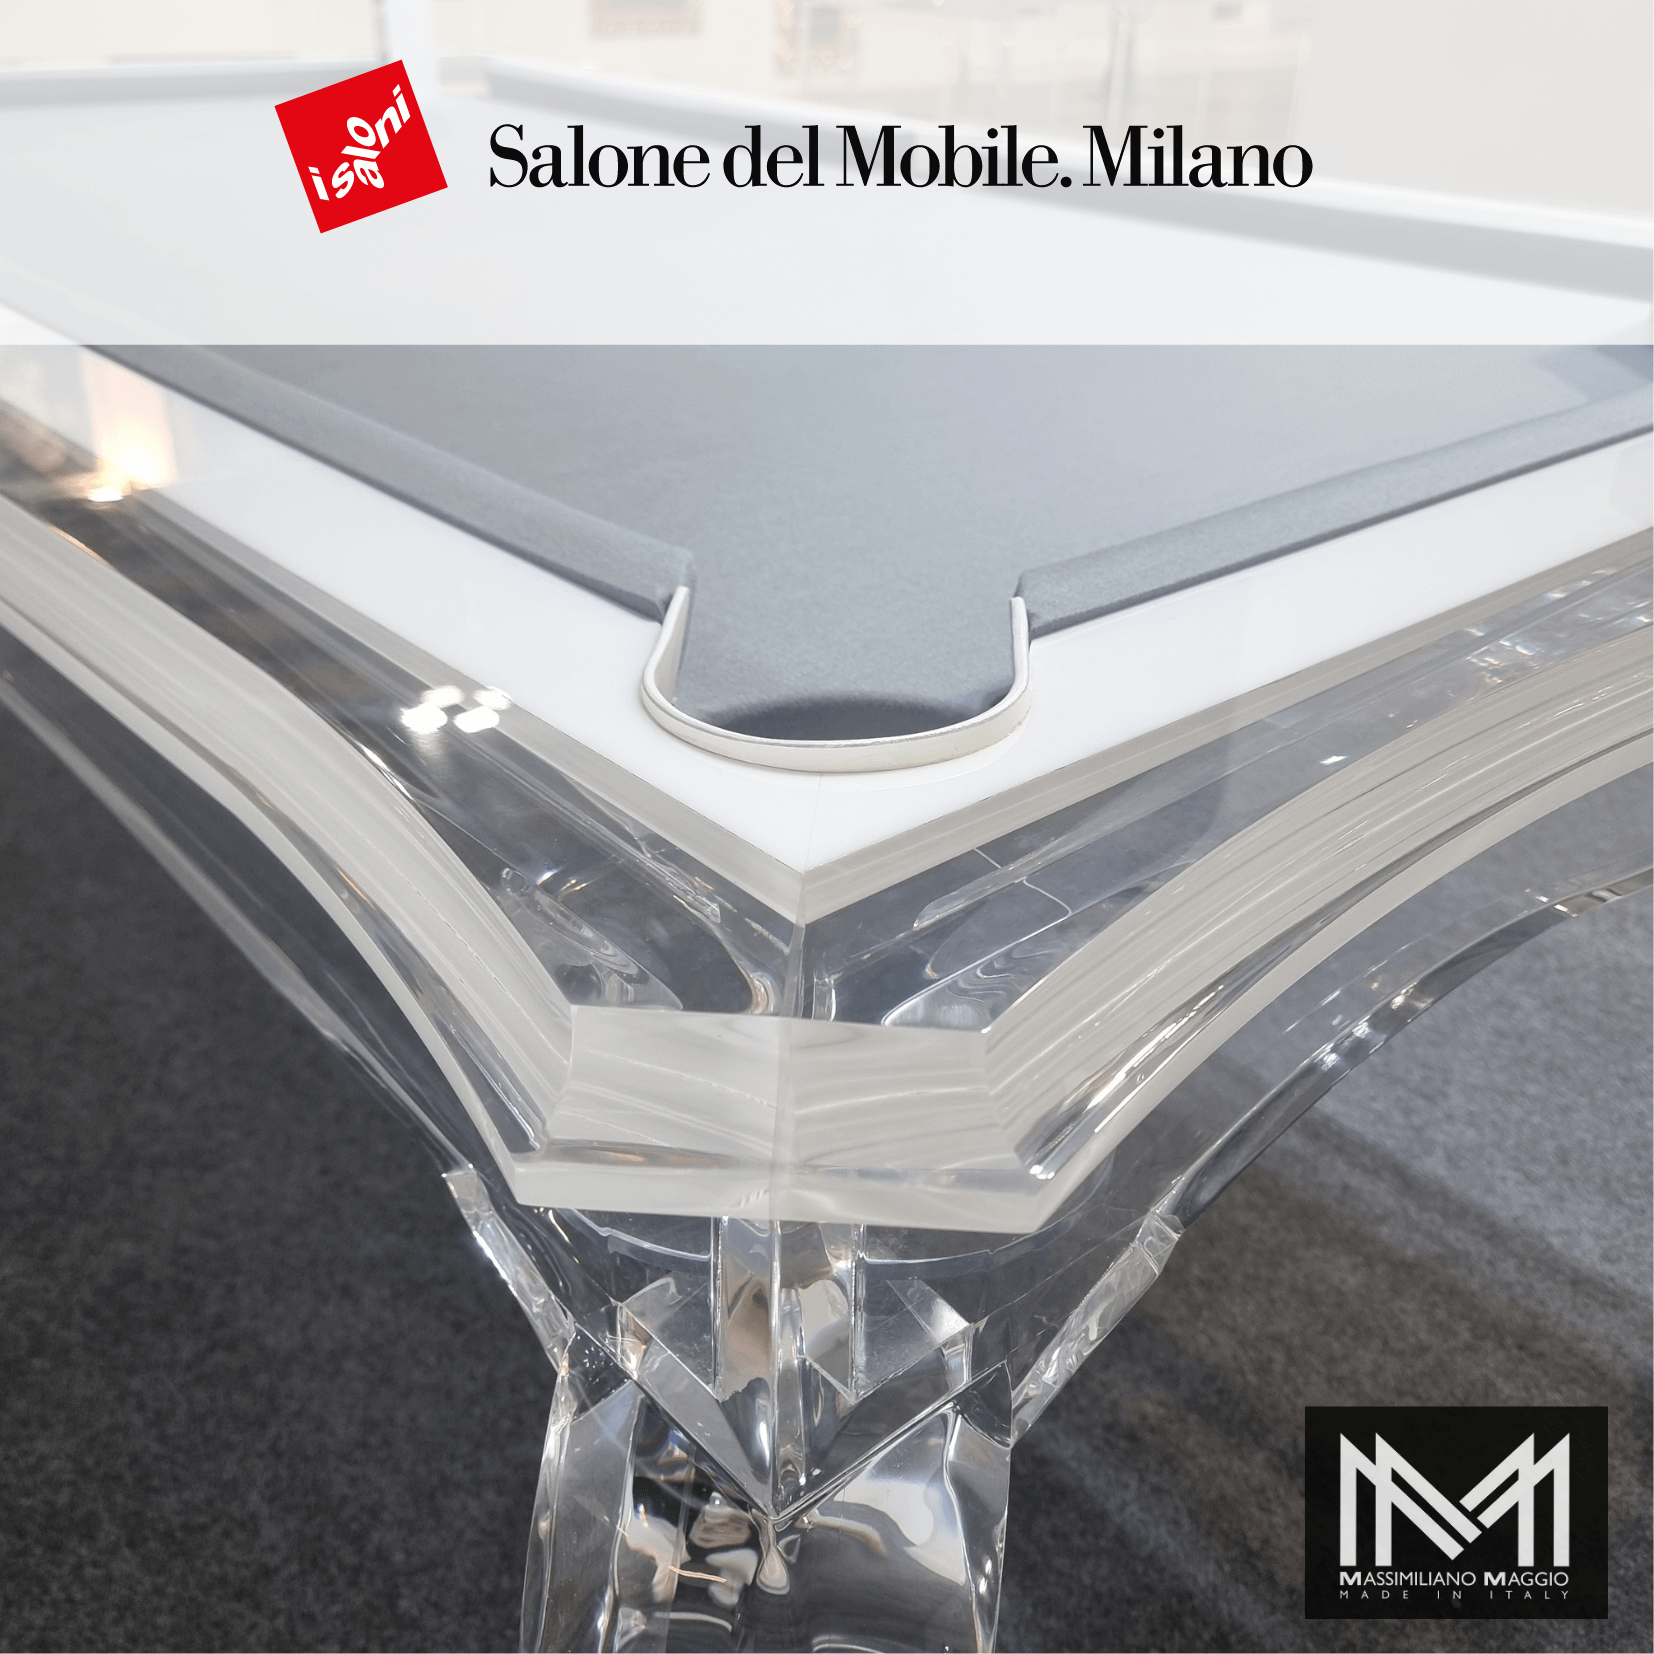 2 New Acrylic Crystal Class Massimiliano Maggio SALONE DEL MOBILE 23 10.png